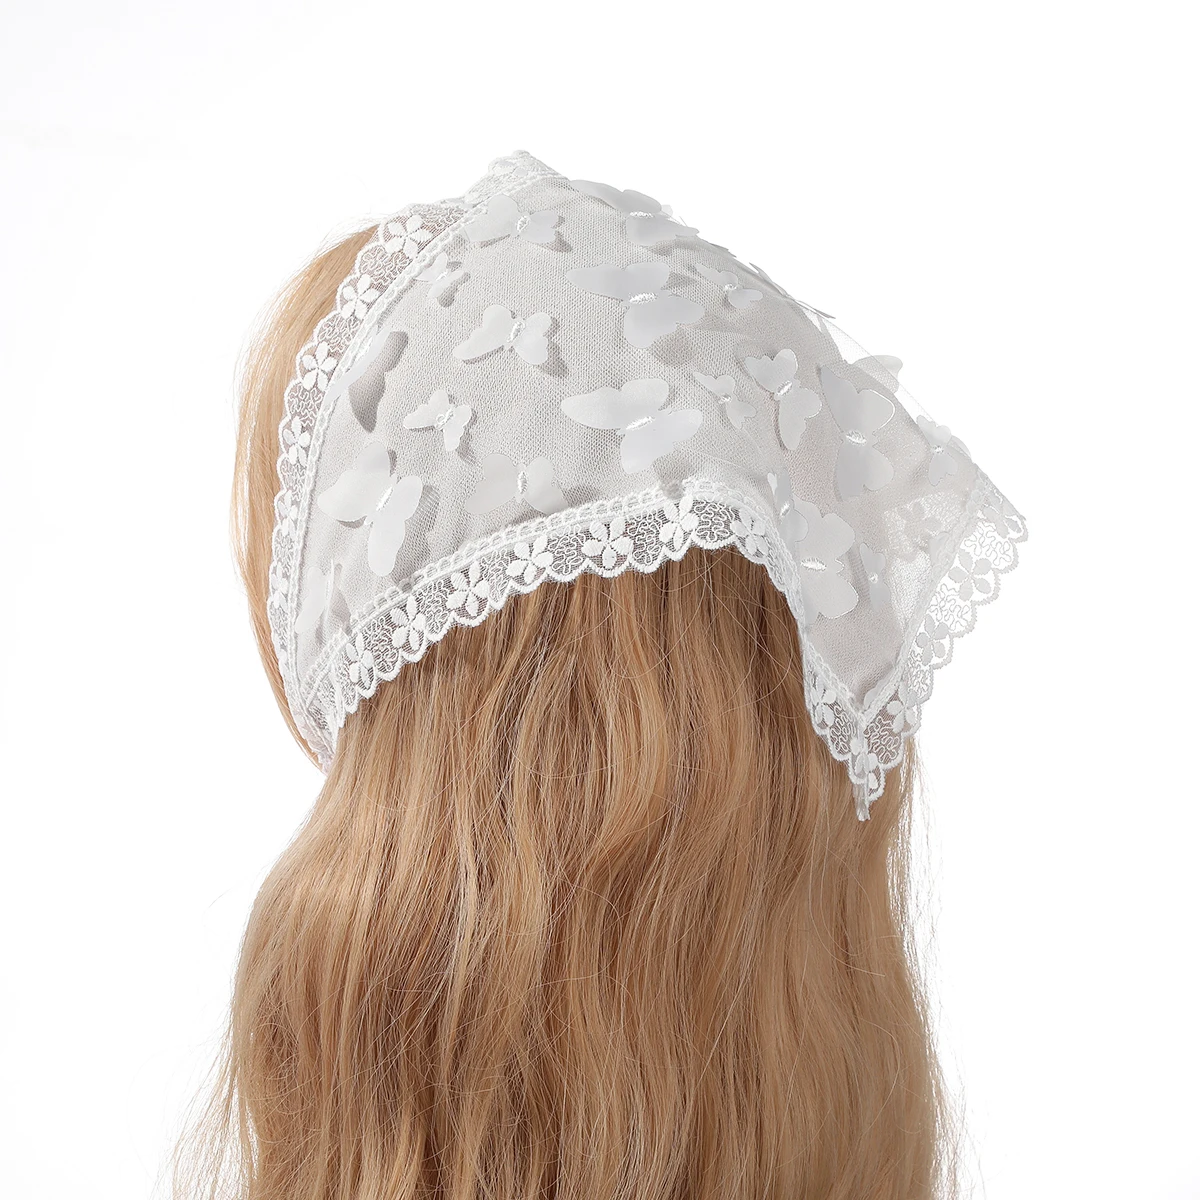 AWAYTR kwiatowy nadruk chusta na głowę Bohemia Bandana opaska z białymi włosami kolorowe motyle trójkątny szalik chustka chusta damska dziewczyna